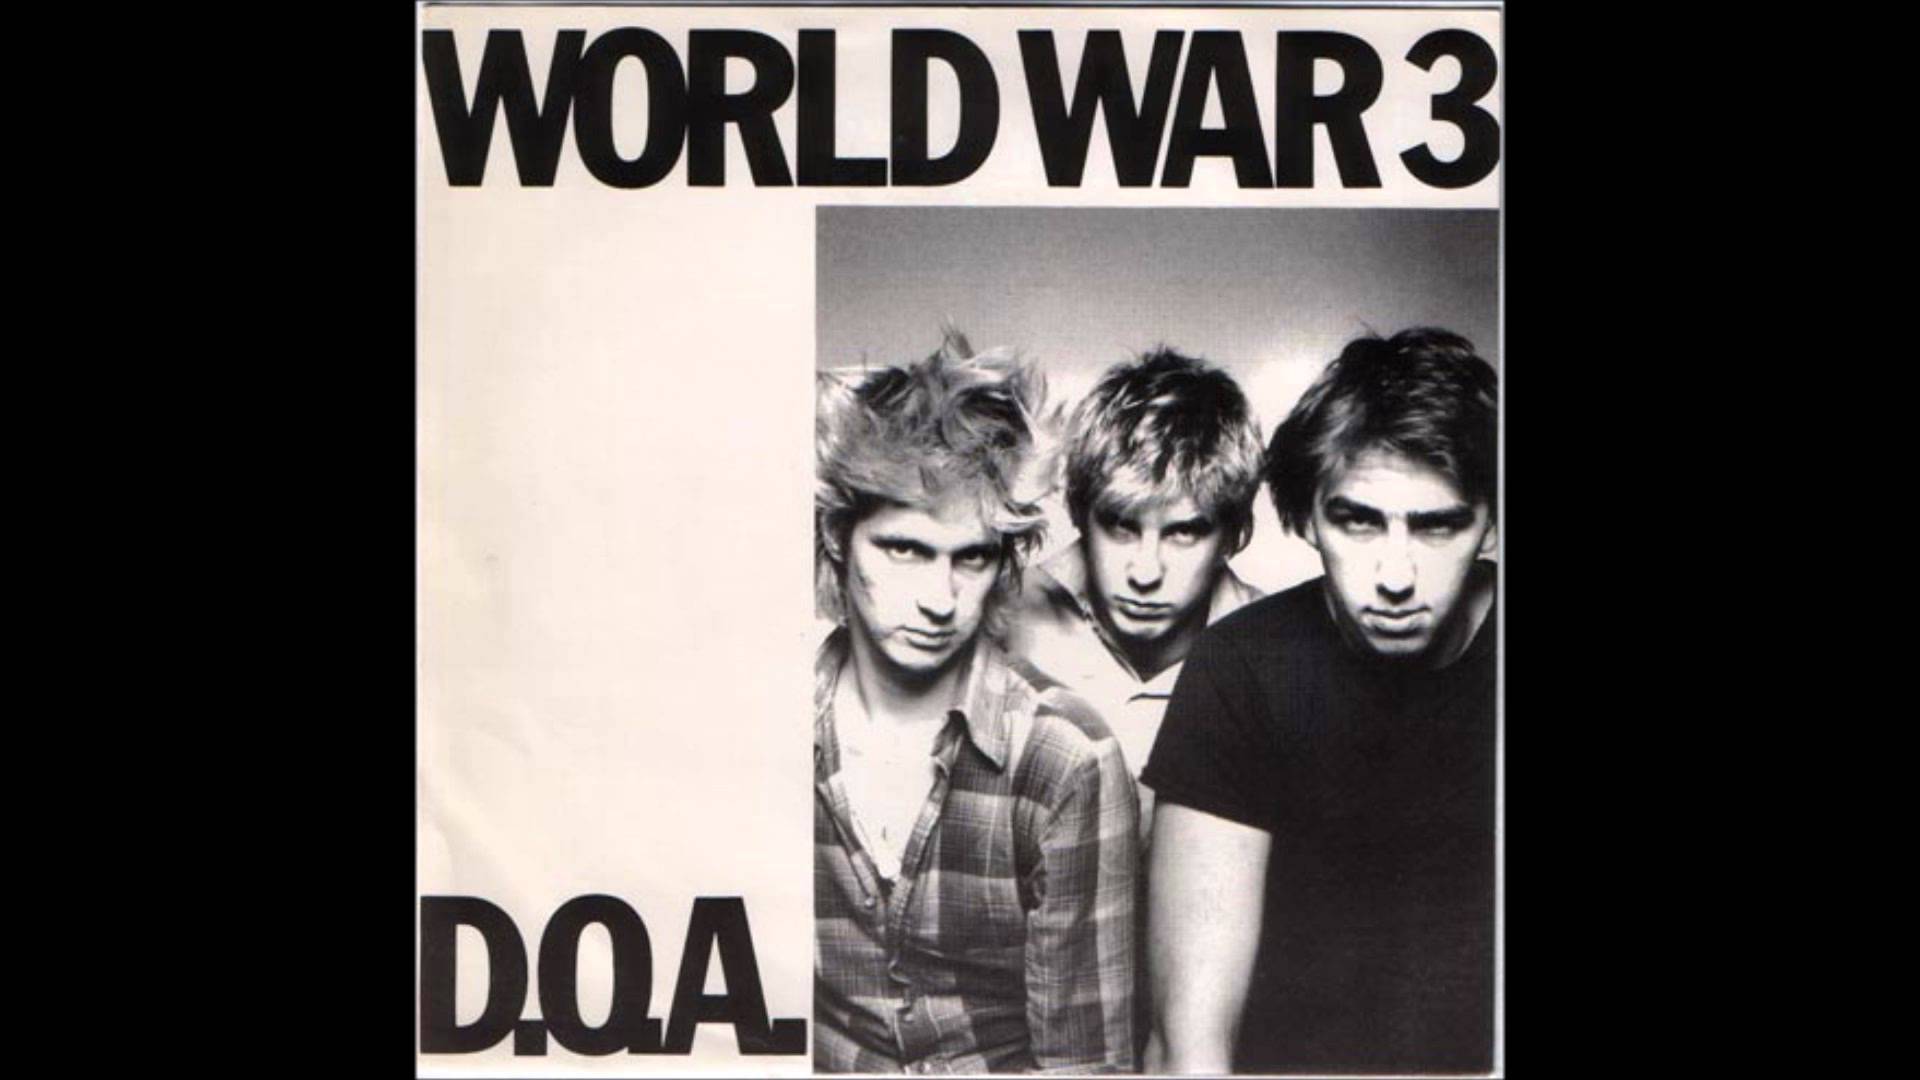 D.O.A. – World War 3